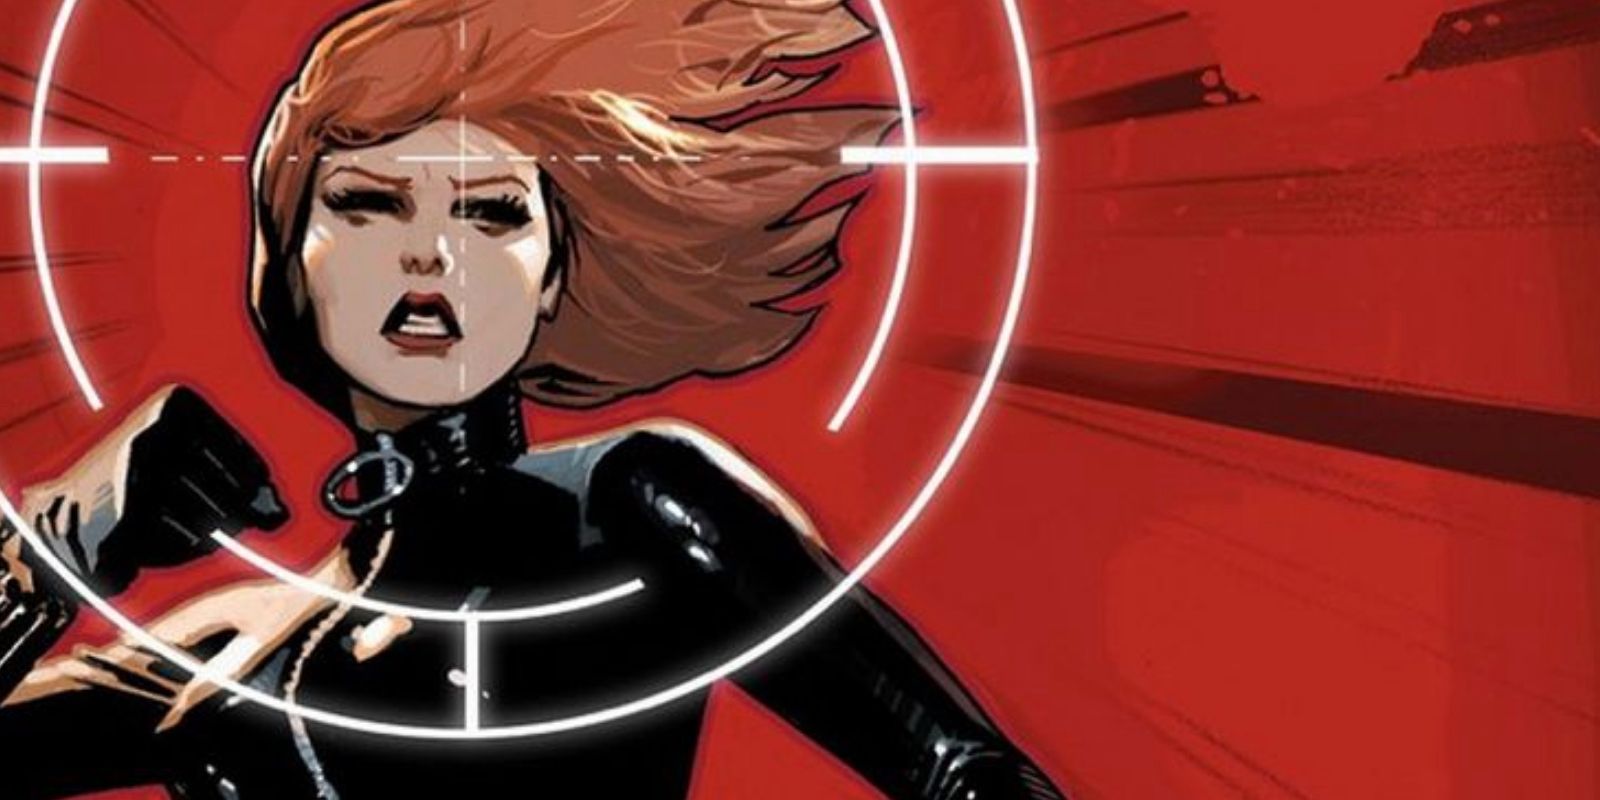 Black Widow in Marvel Comics